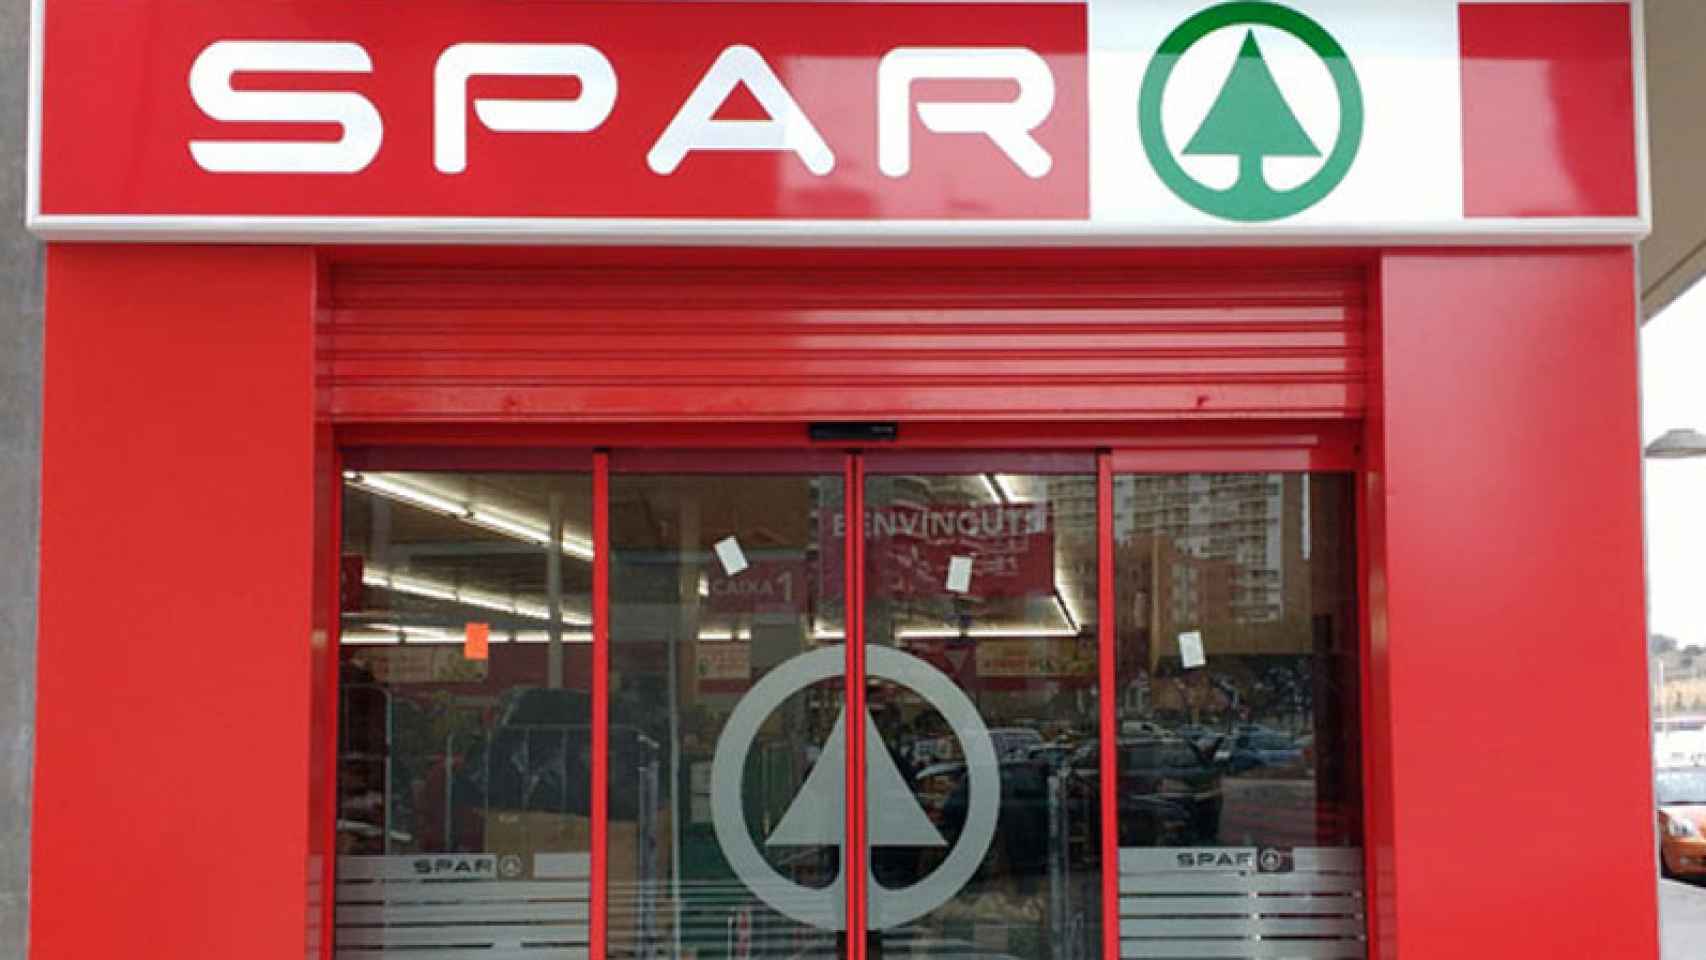 Uno de los supermercados de la marca Spar, del grupo Fragadis, en Tarragona